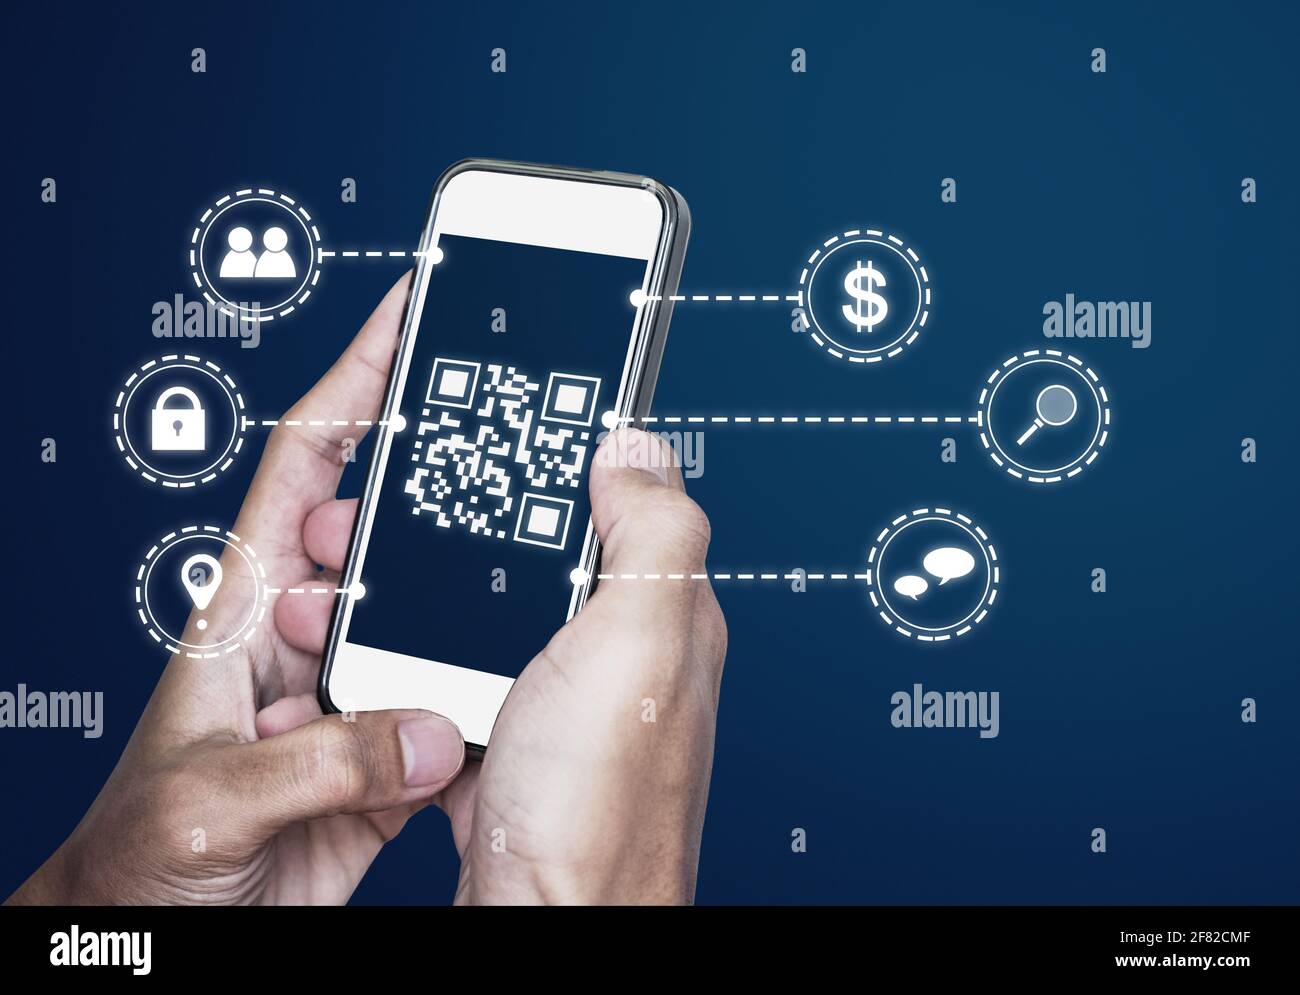 QR-Code-Technologie. Scannen von Zahlungen und ID-Verifizierung per QR-Code auf dem mobilen Smartphone Stockfoto